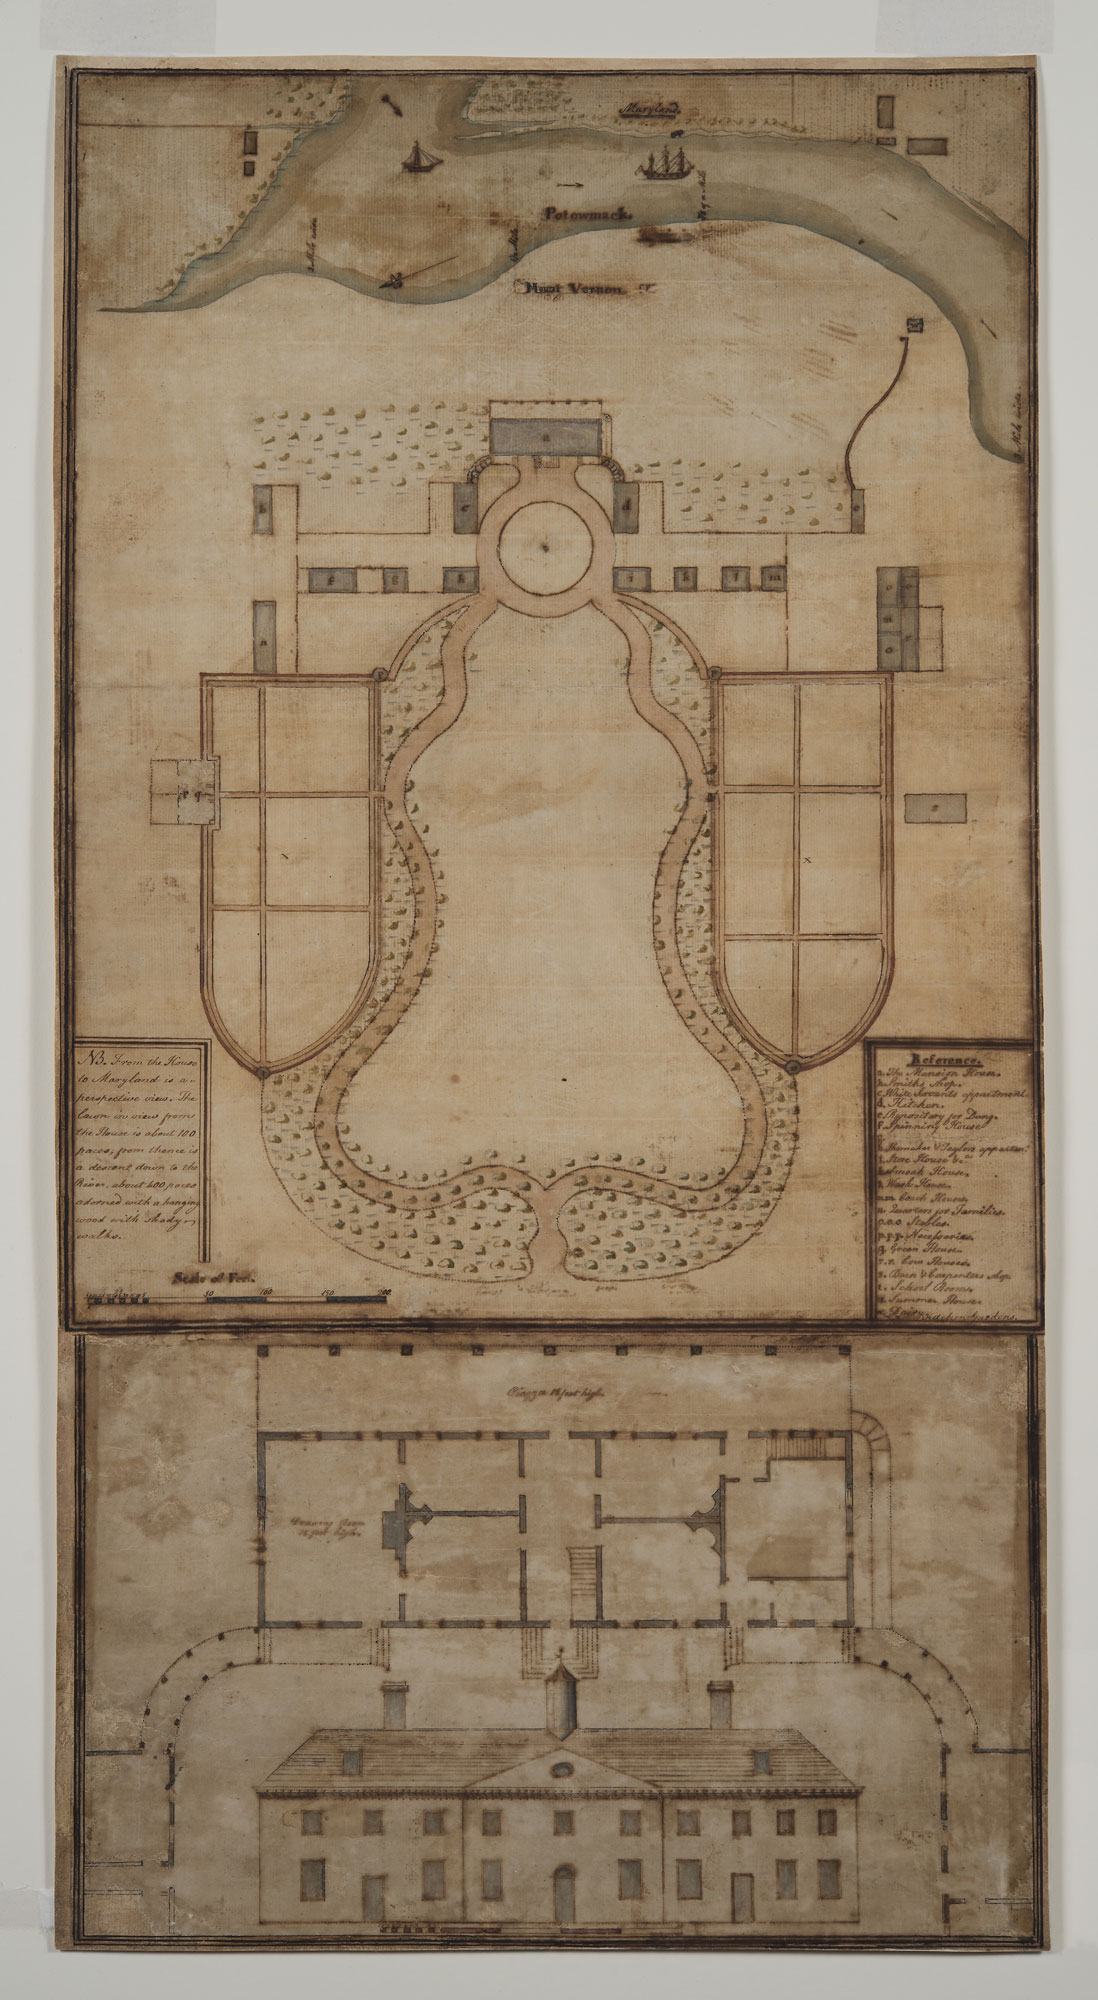 Samuel Vaughan, Plan of Mount Vernon, 1787.